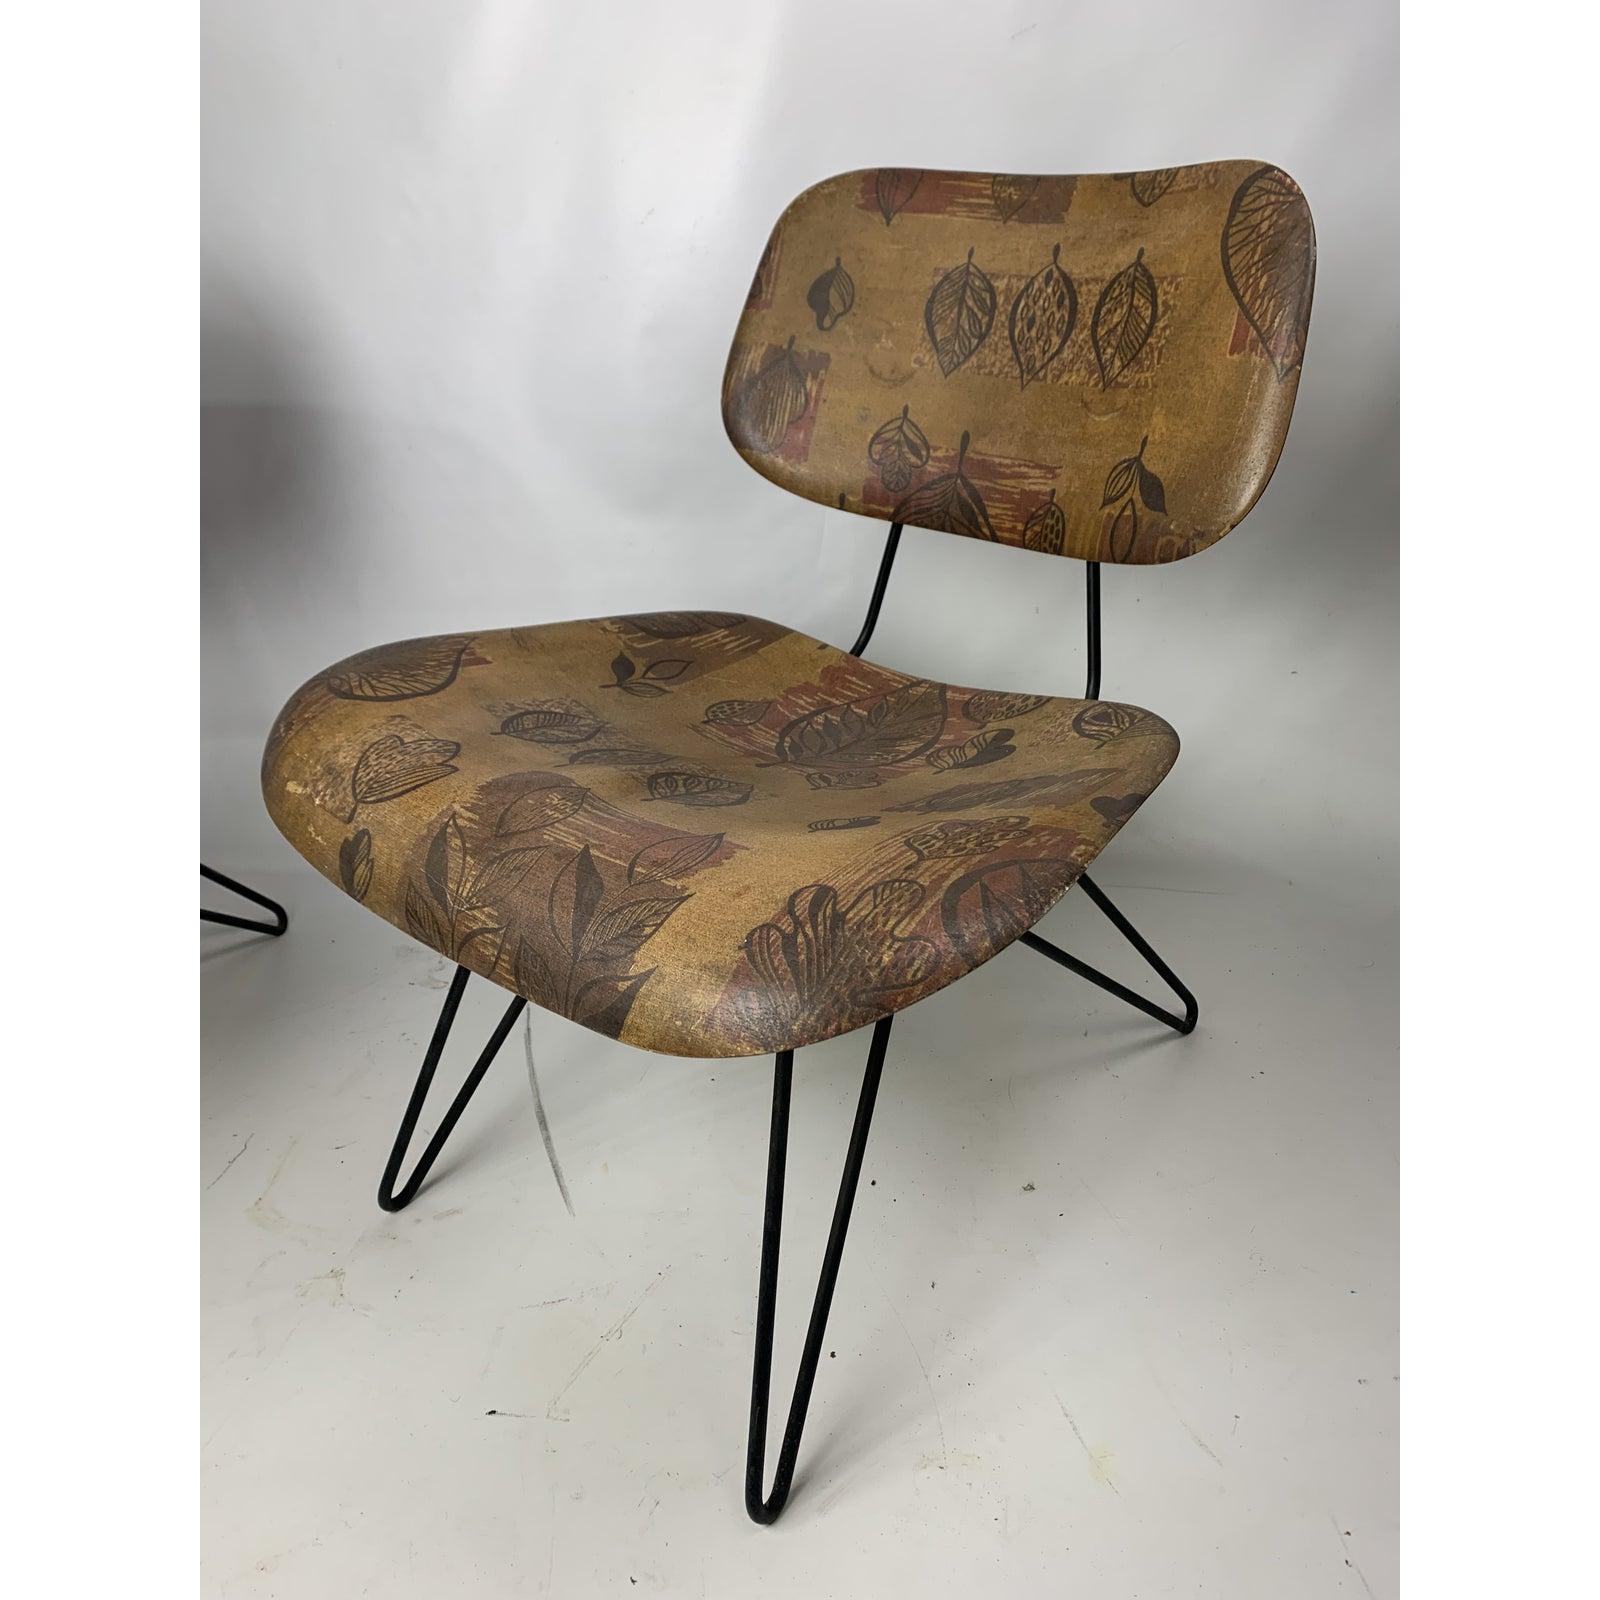 Construit par Chemold Manufacturing, Hobart Wells a conçu cette chaise d'appoint en épingle à cheveux pour la Lensol-Wells Company. Cette chaise est dotée d'une assise et d'un dossier en fibre de verre moulée et d'un tissu, par Glenn of California